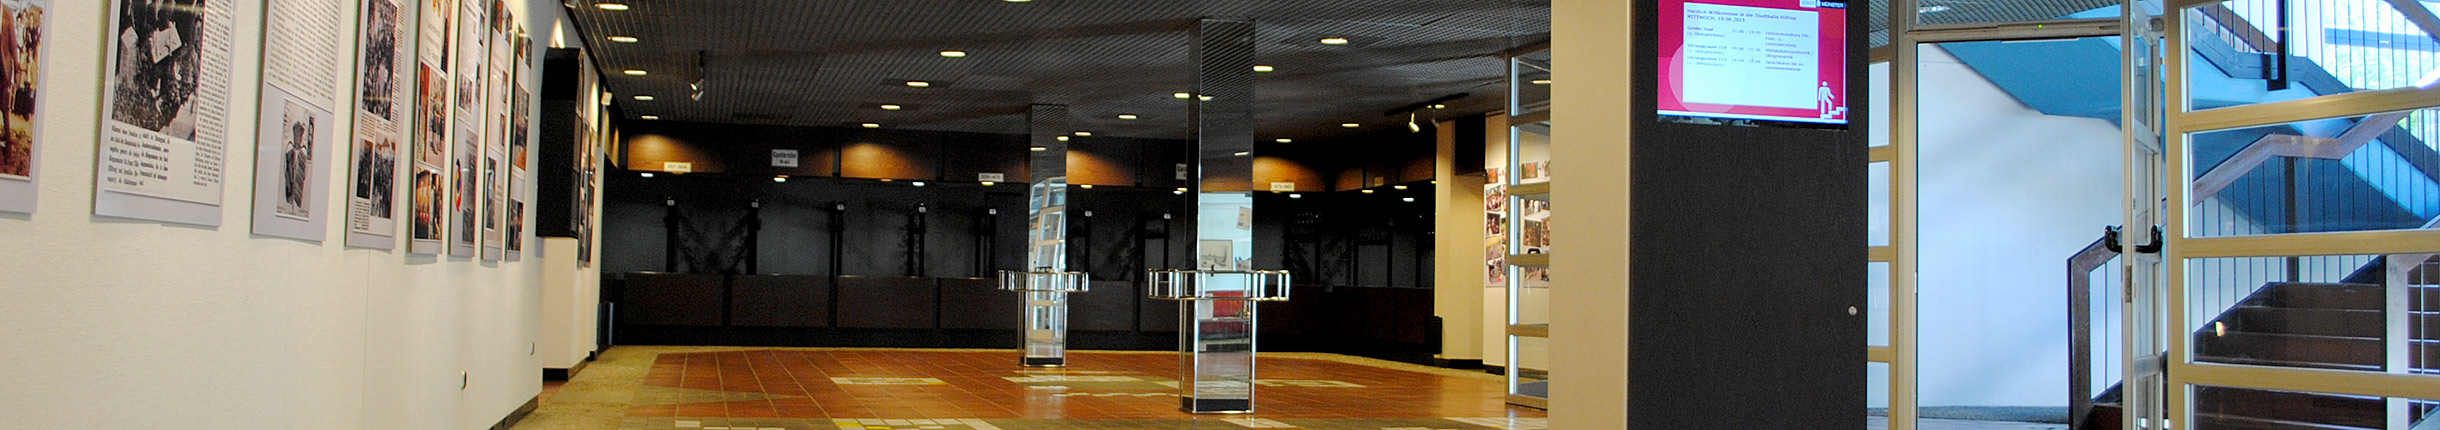 Stadthalle Hiltrup - Foyer